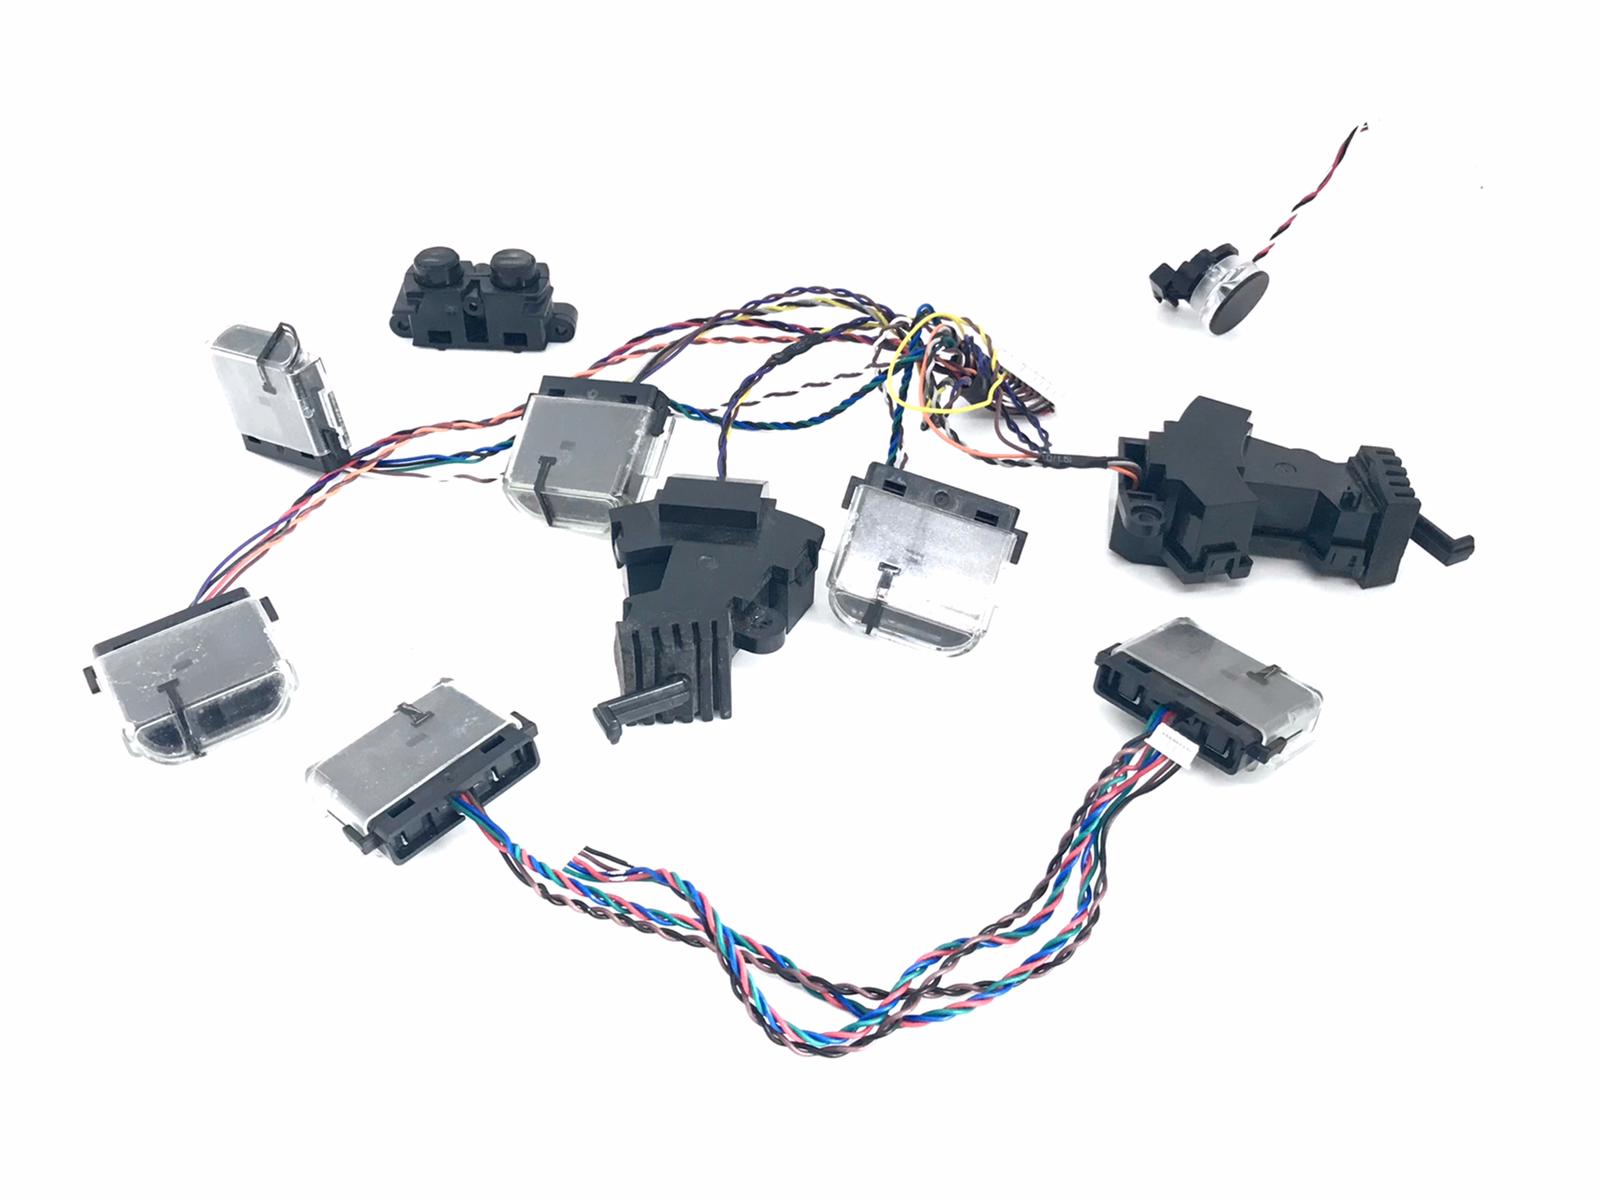 Full Pack of Sensors iRobot Roomba i7 Price - iNeedParts